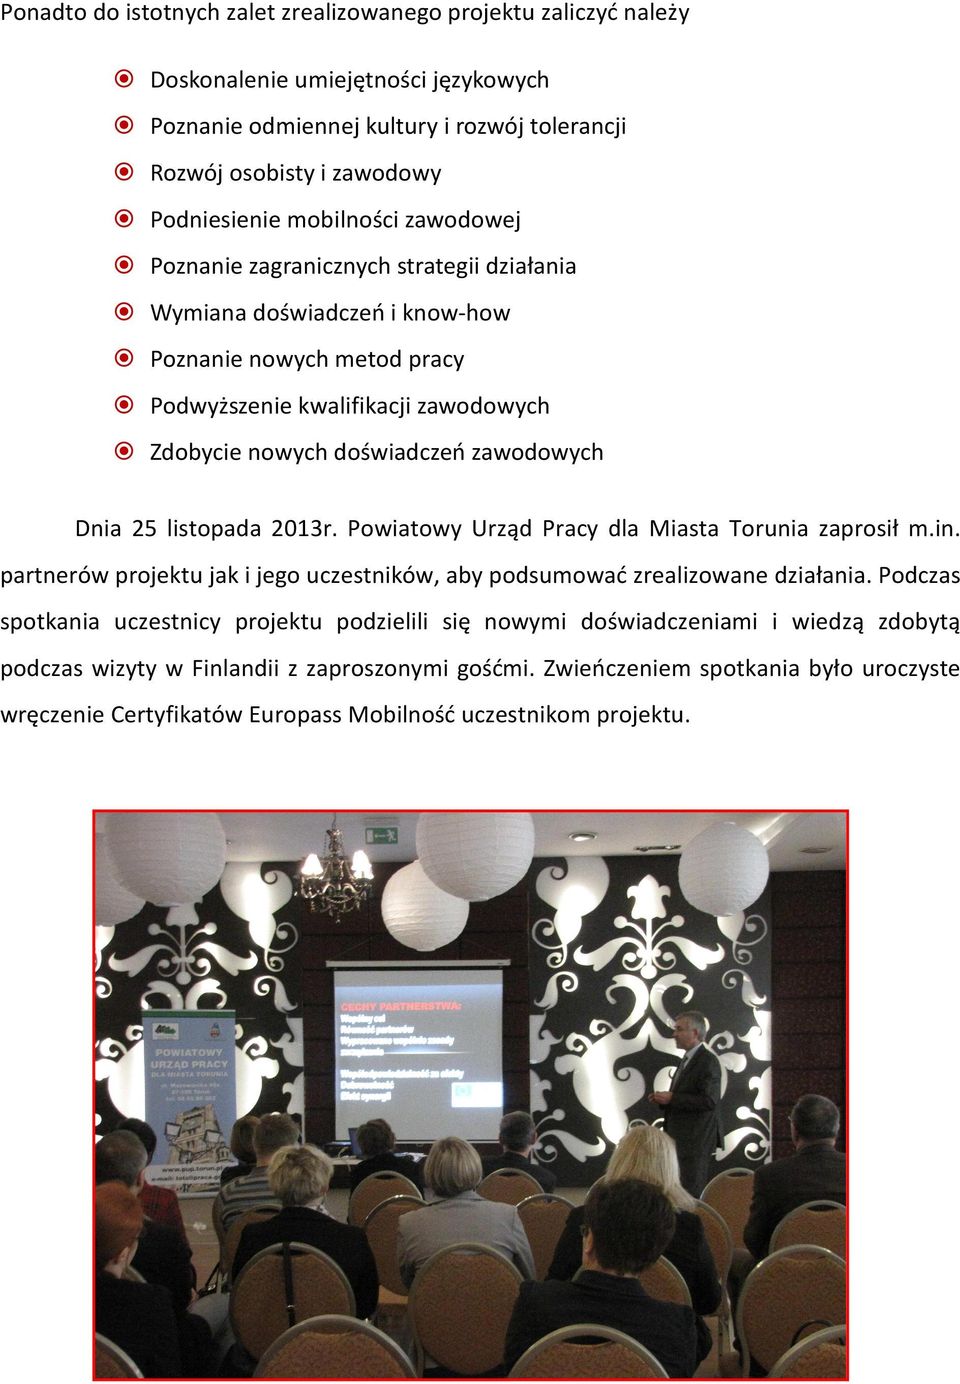 Dnia 25 listopada 2013r. Powiatowy Urząd Pracy dla Miasta Torunia zaprosił m.in. partnerów projektu jak i jego uczestników, aby podsumować zrealizowane działania.